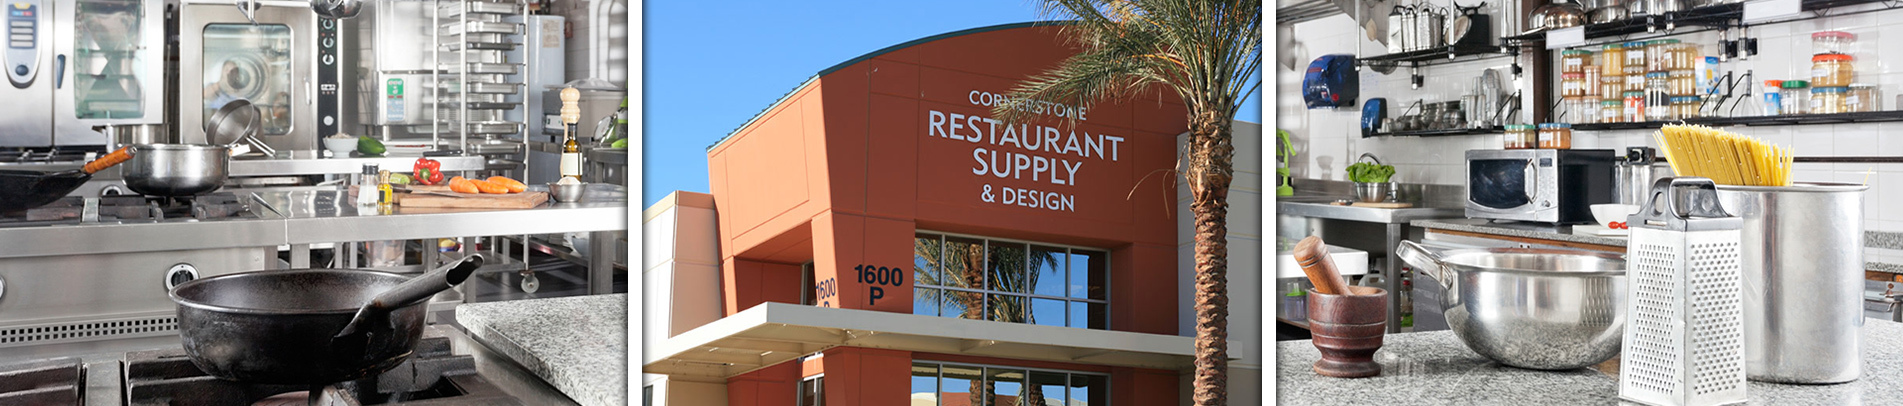 Cornerstone Restaurant Supply & Design